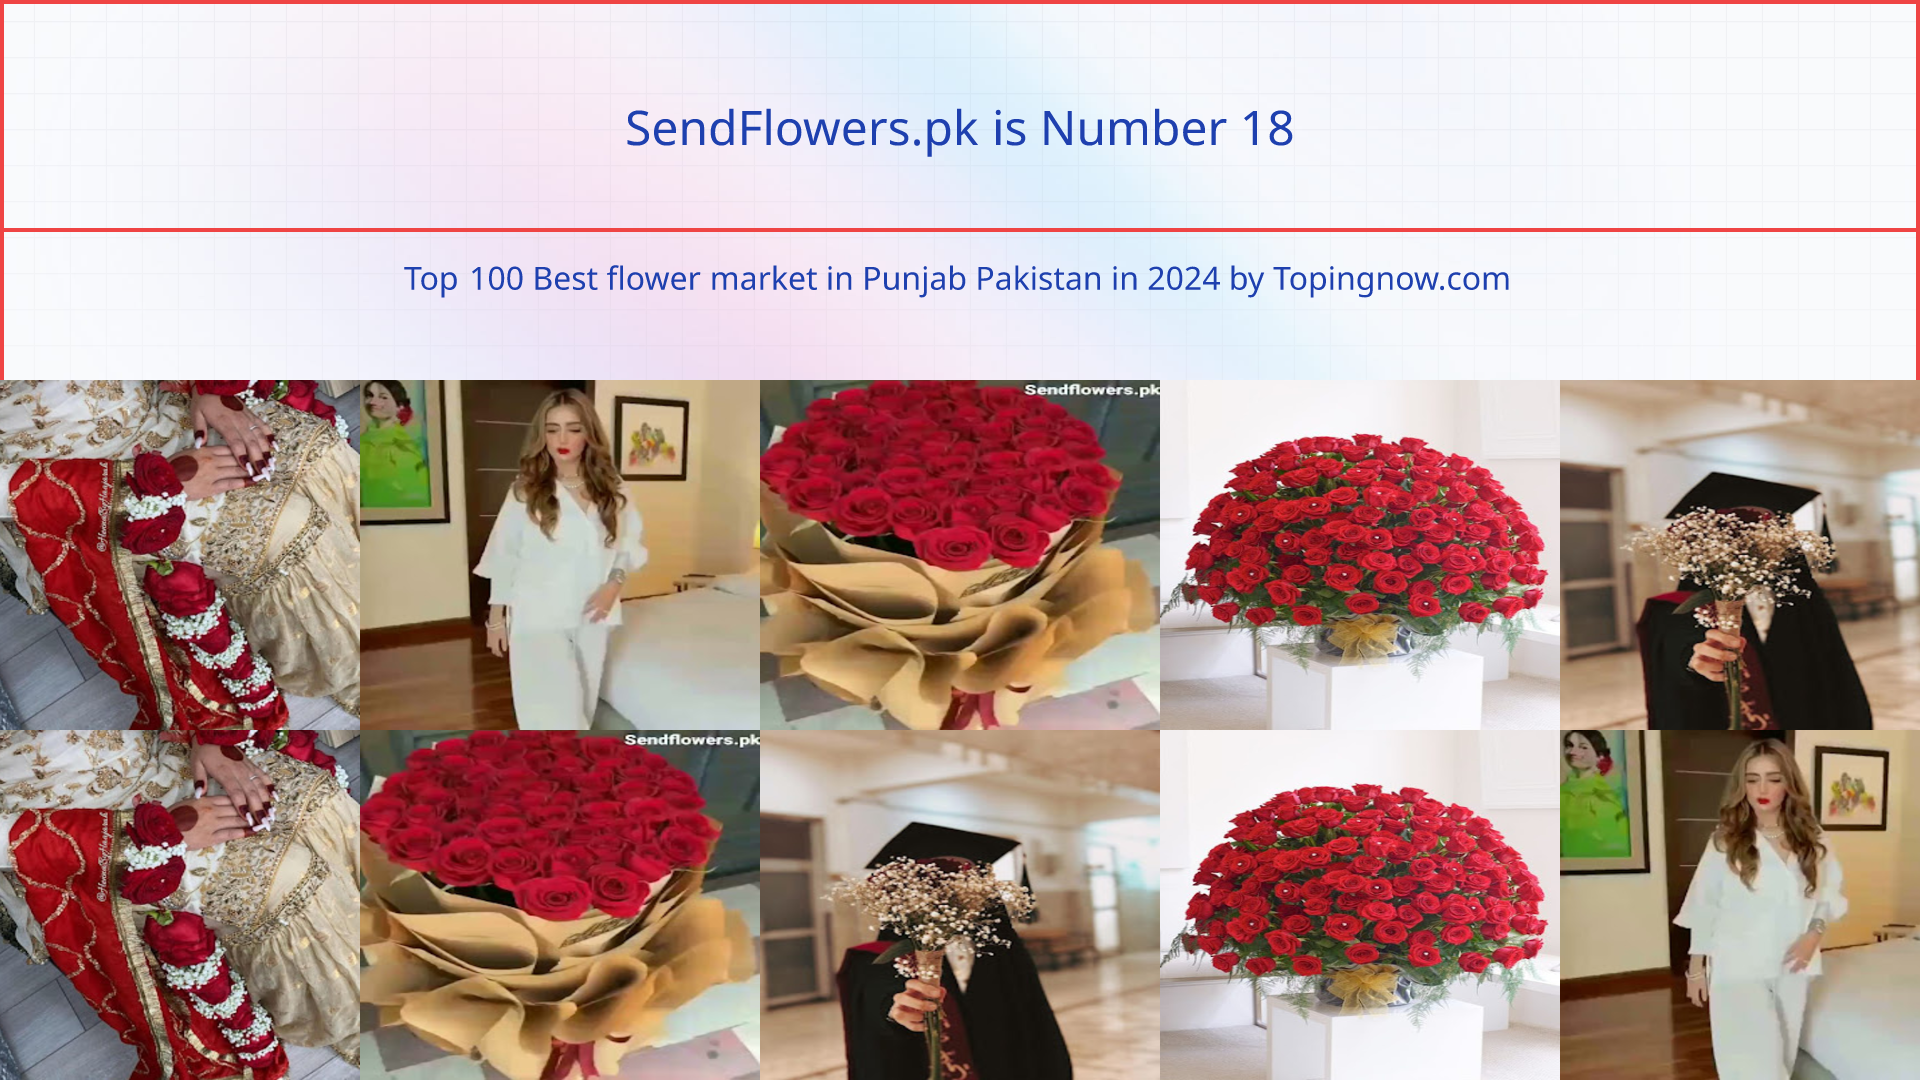 SendFlowers.pk: Top 100 Best flower market in Punjab Pakistan in 2024